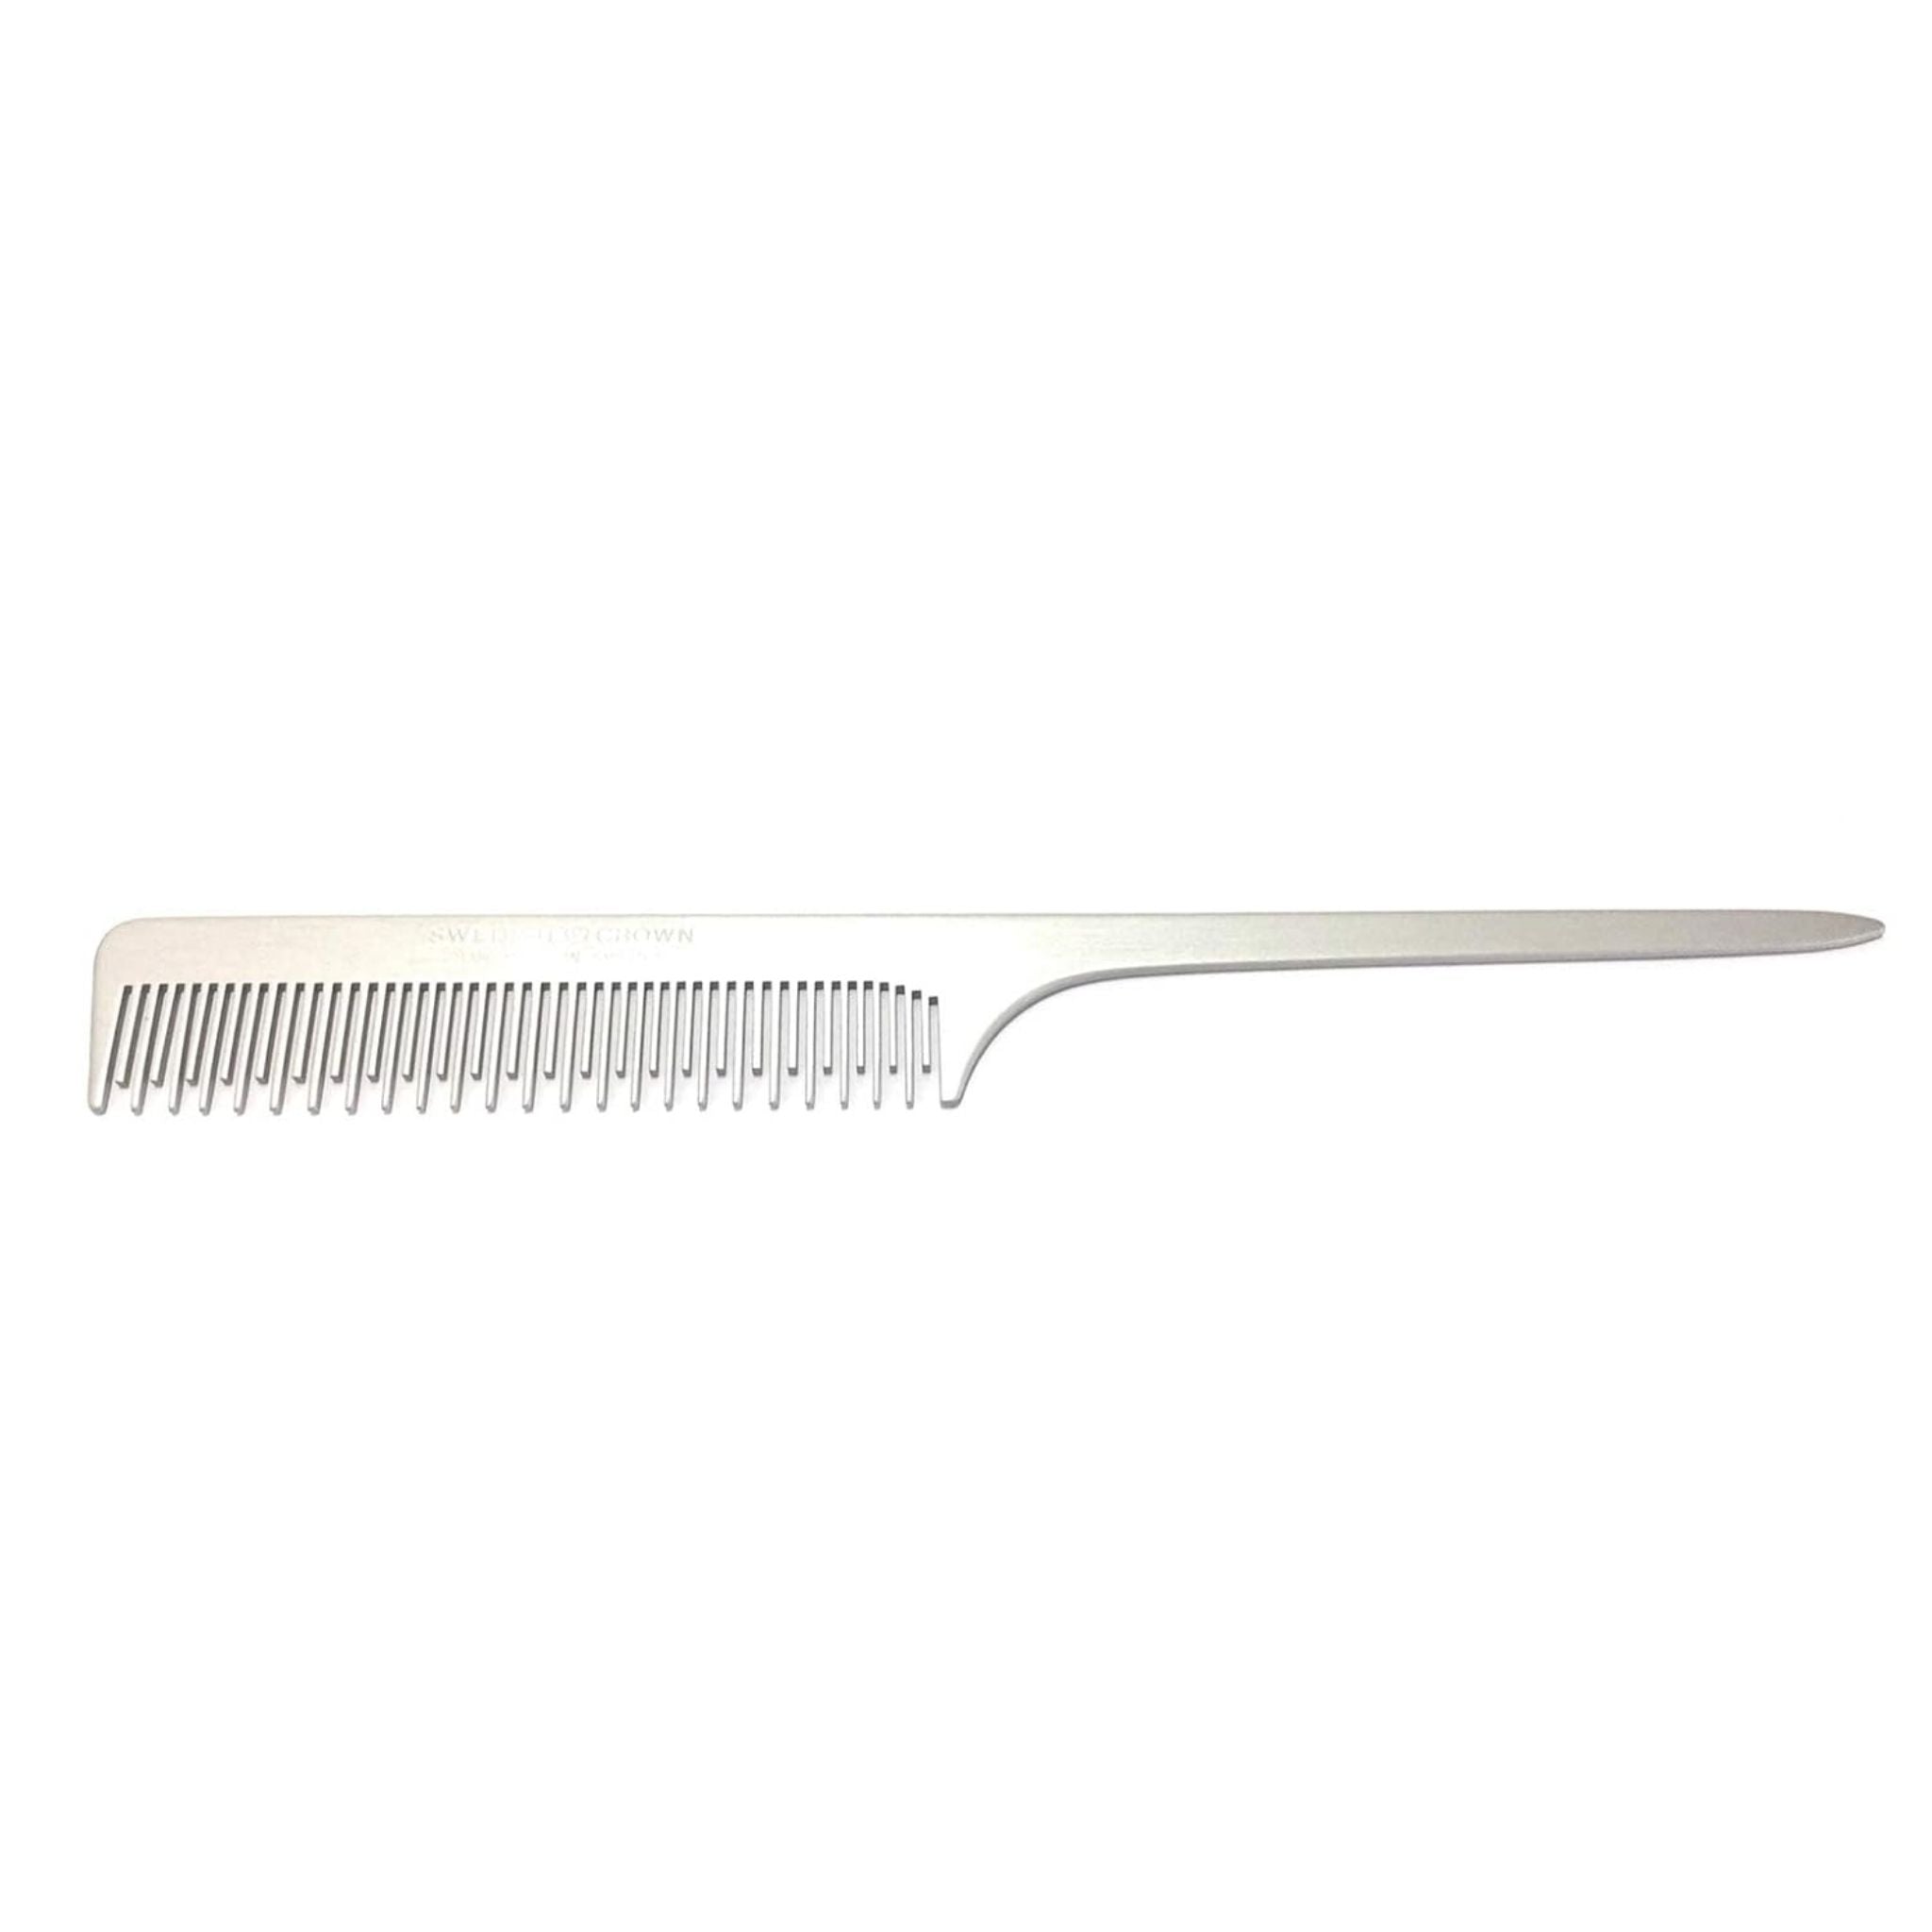 Metal handle comb aluminum